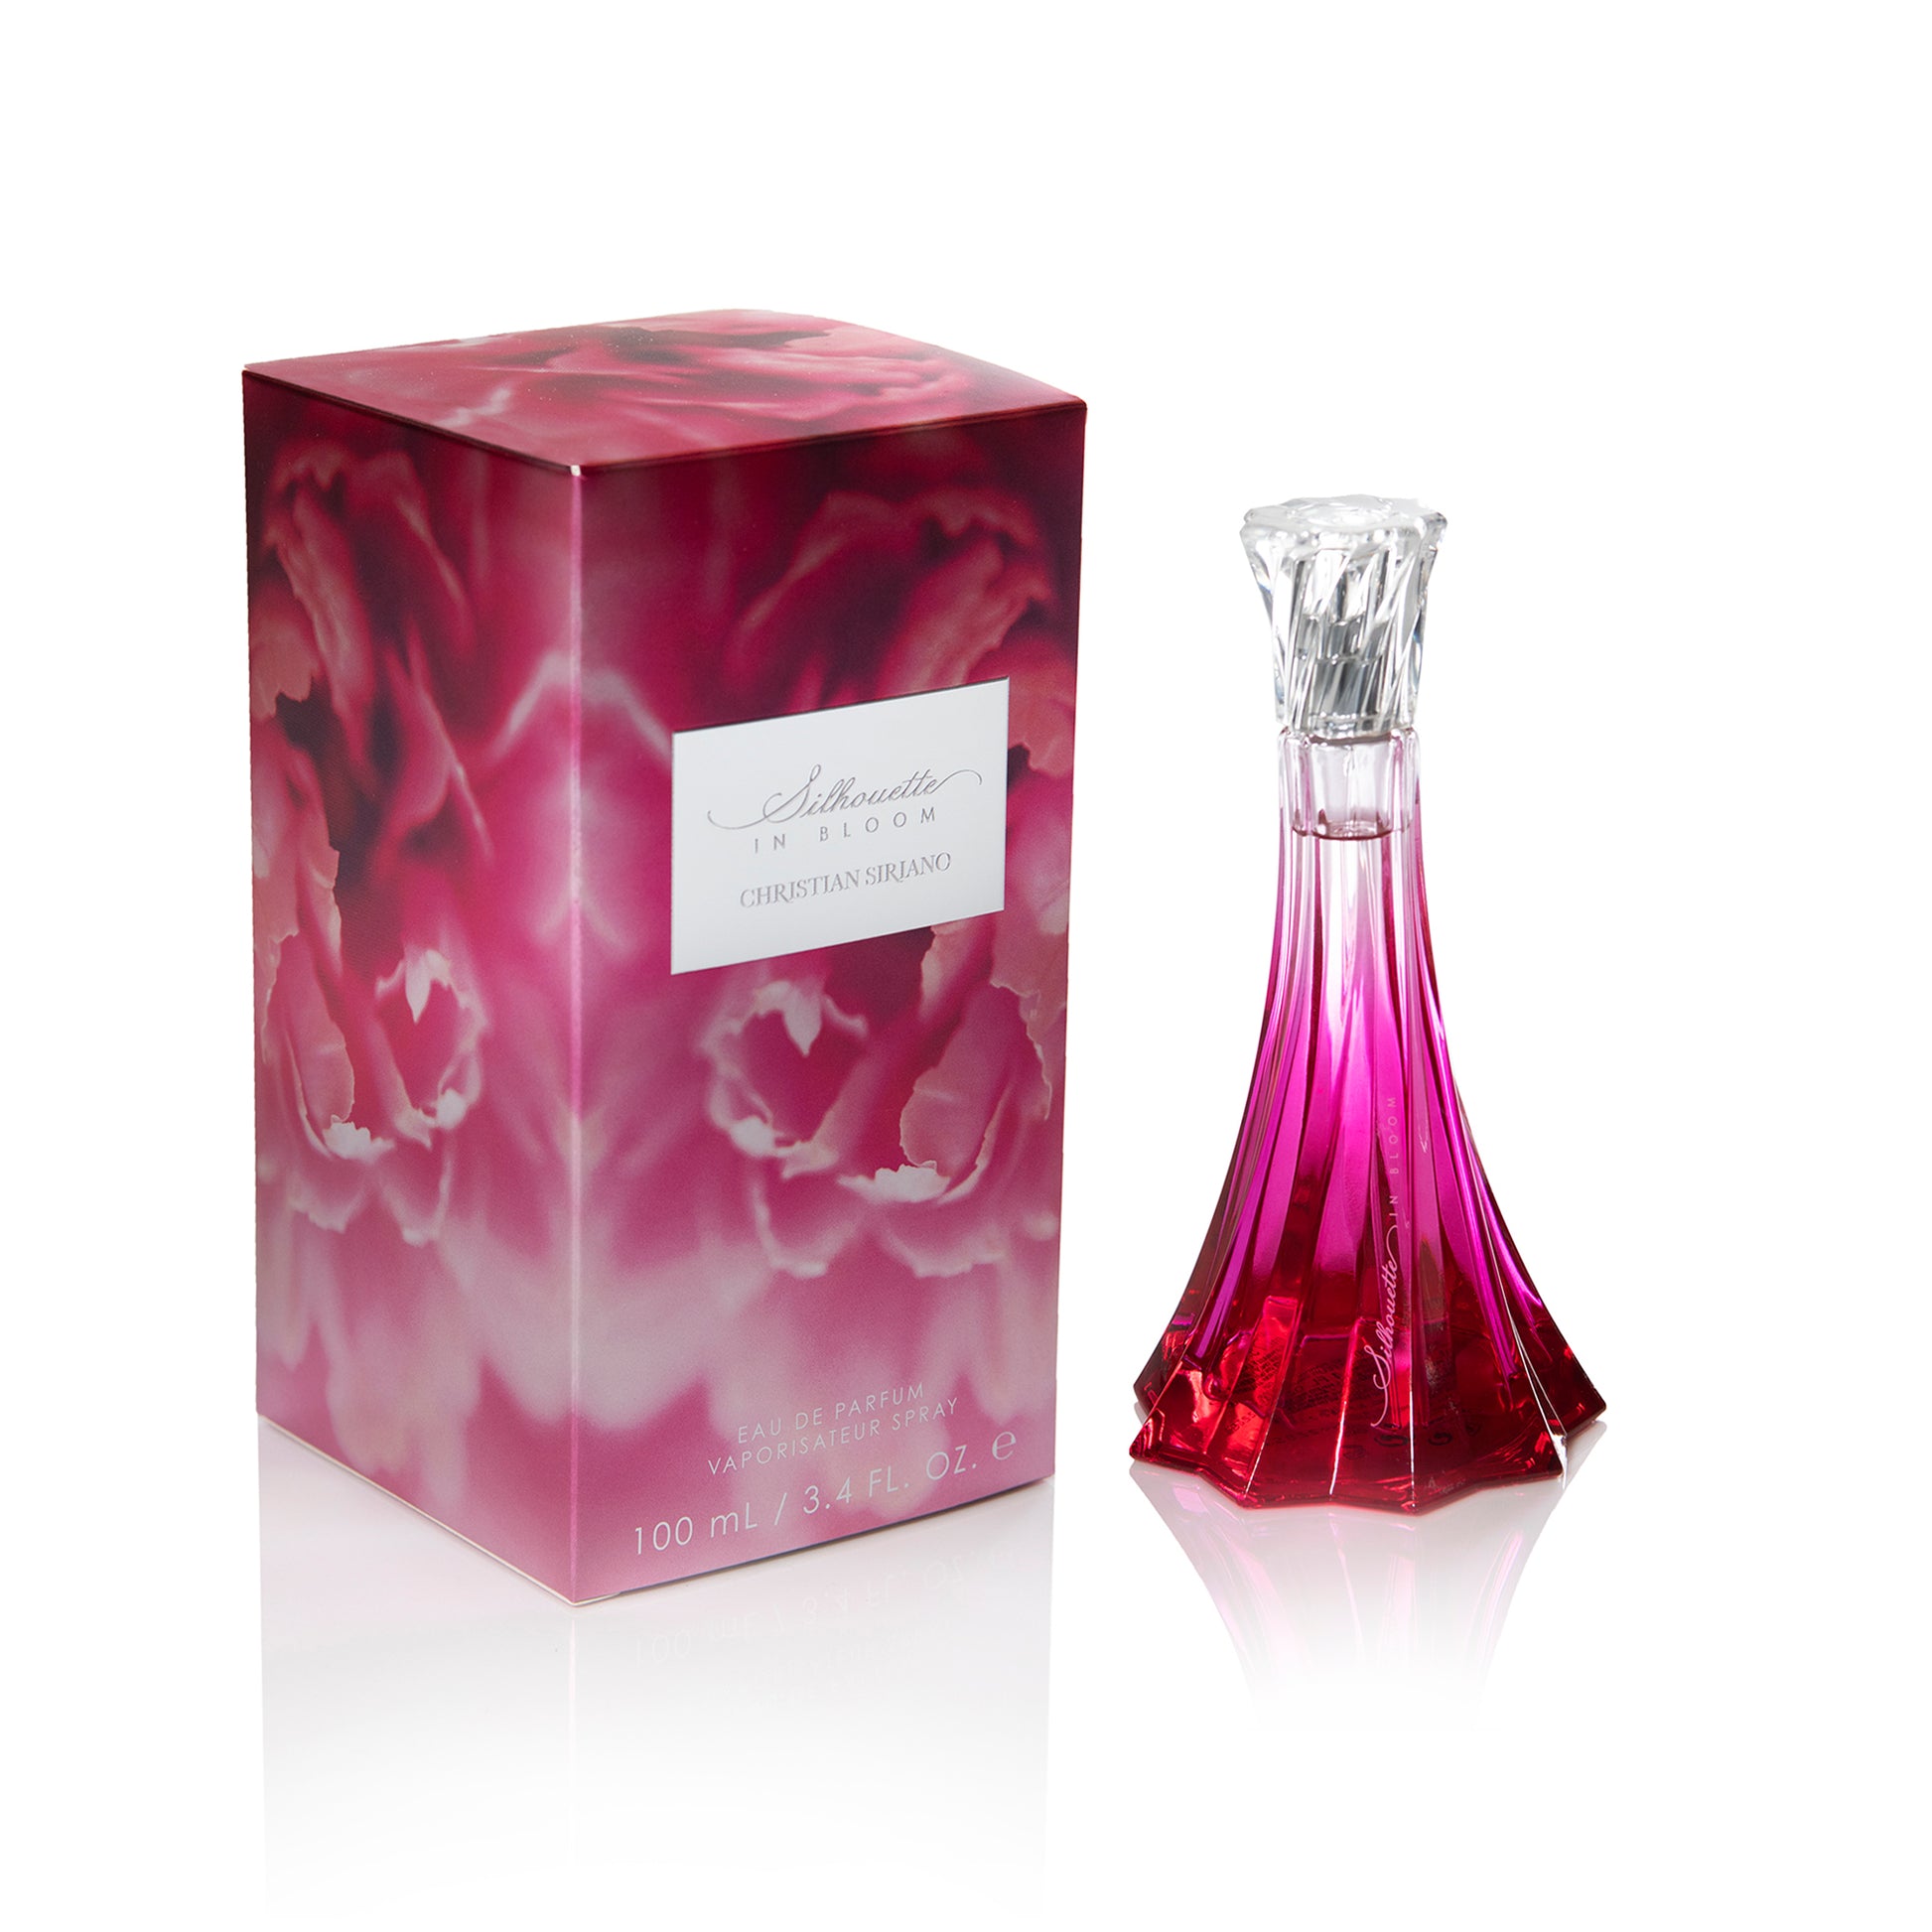 Silhouette in Bloom 3.4 oz Eau de Parfum – So Avant Garde